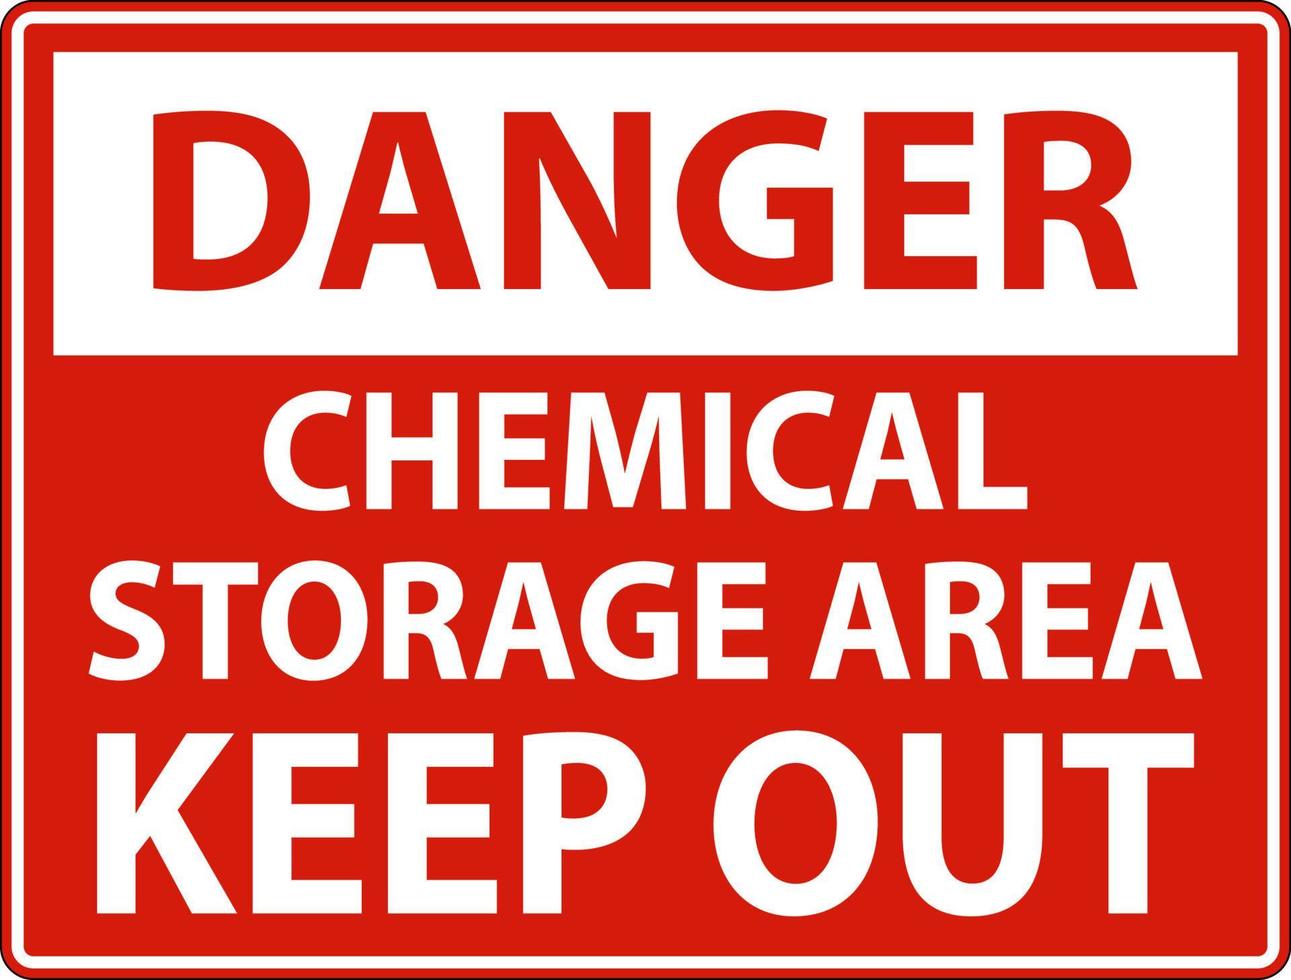 etiqueta de peligro área de almacenamiento de productos químicos mantener fuera señal vector